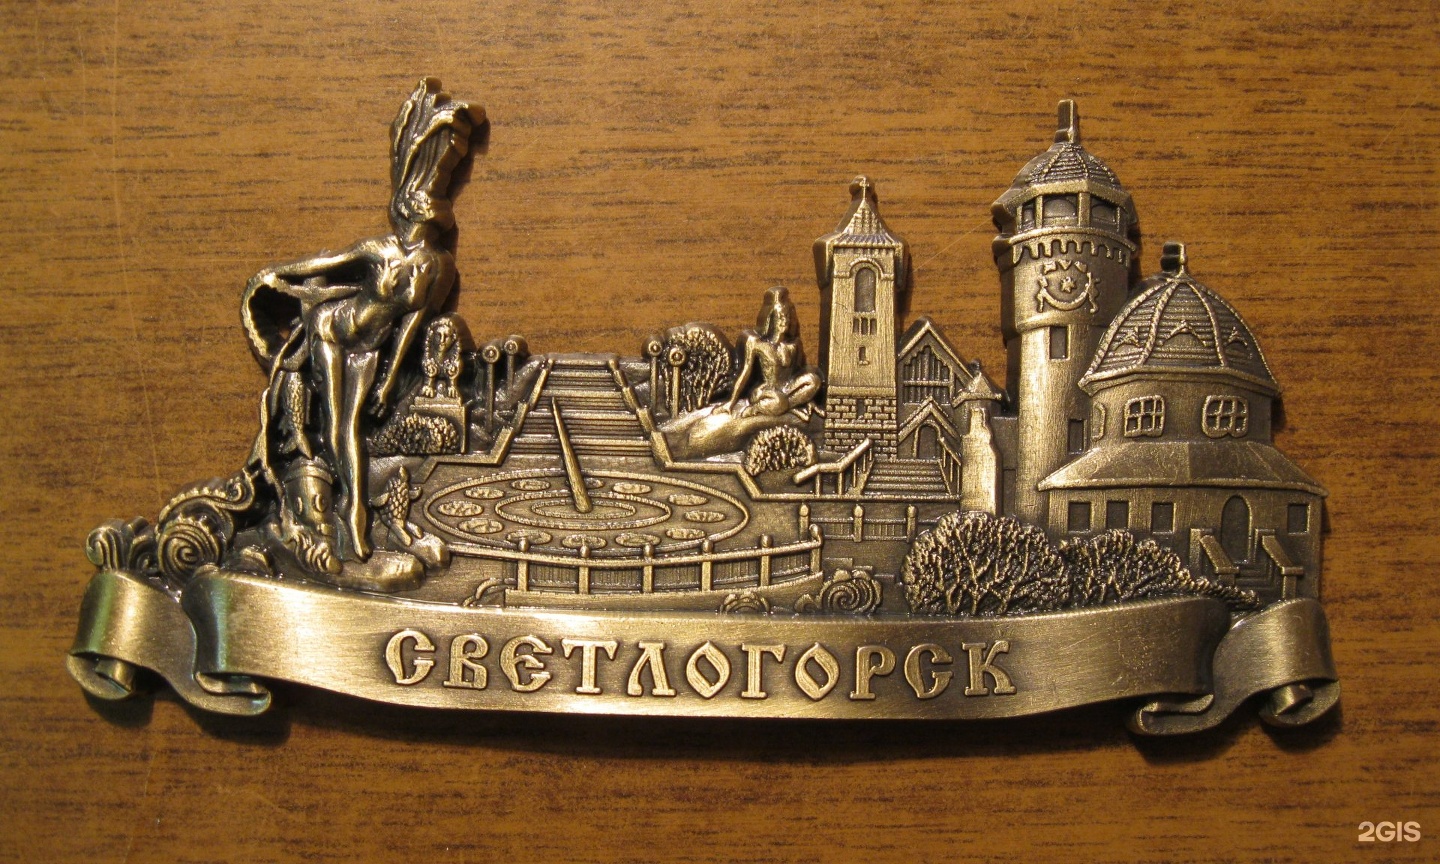 Где Купить Сувениры В Калининграде Недорого